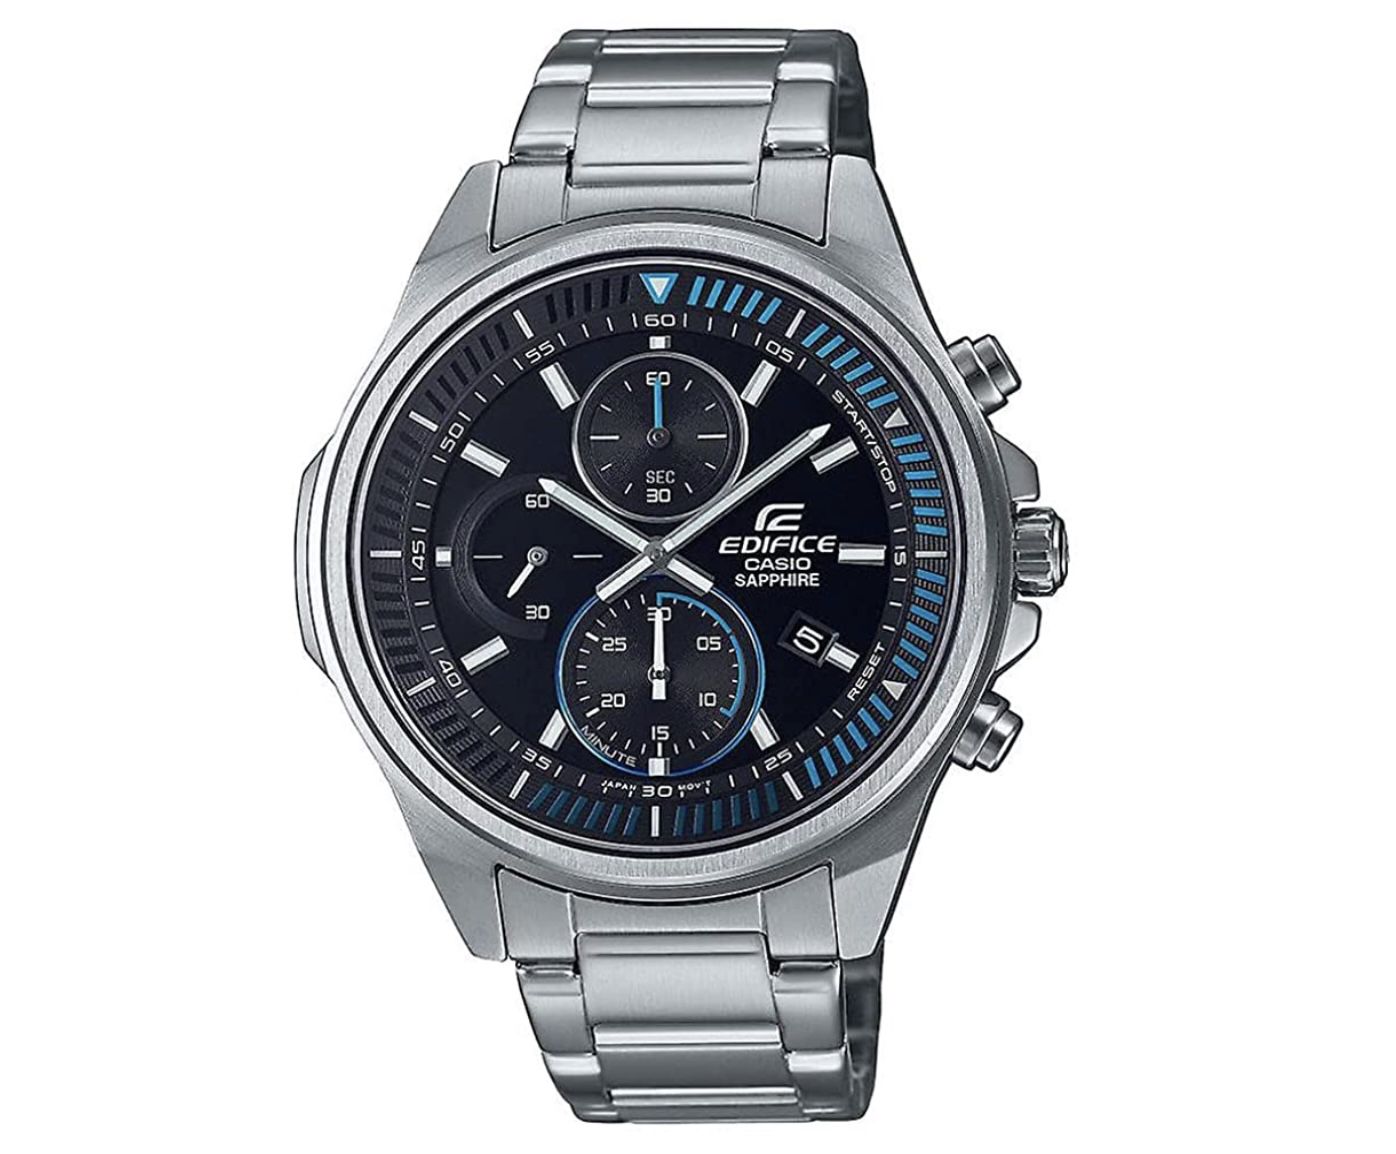 Casio Unisex-Erwachsene Chronograph Quartz Uhr mit Edelstahl-Armband für 87,10€ (statt 100€)